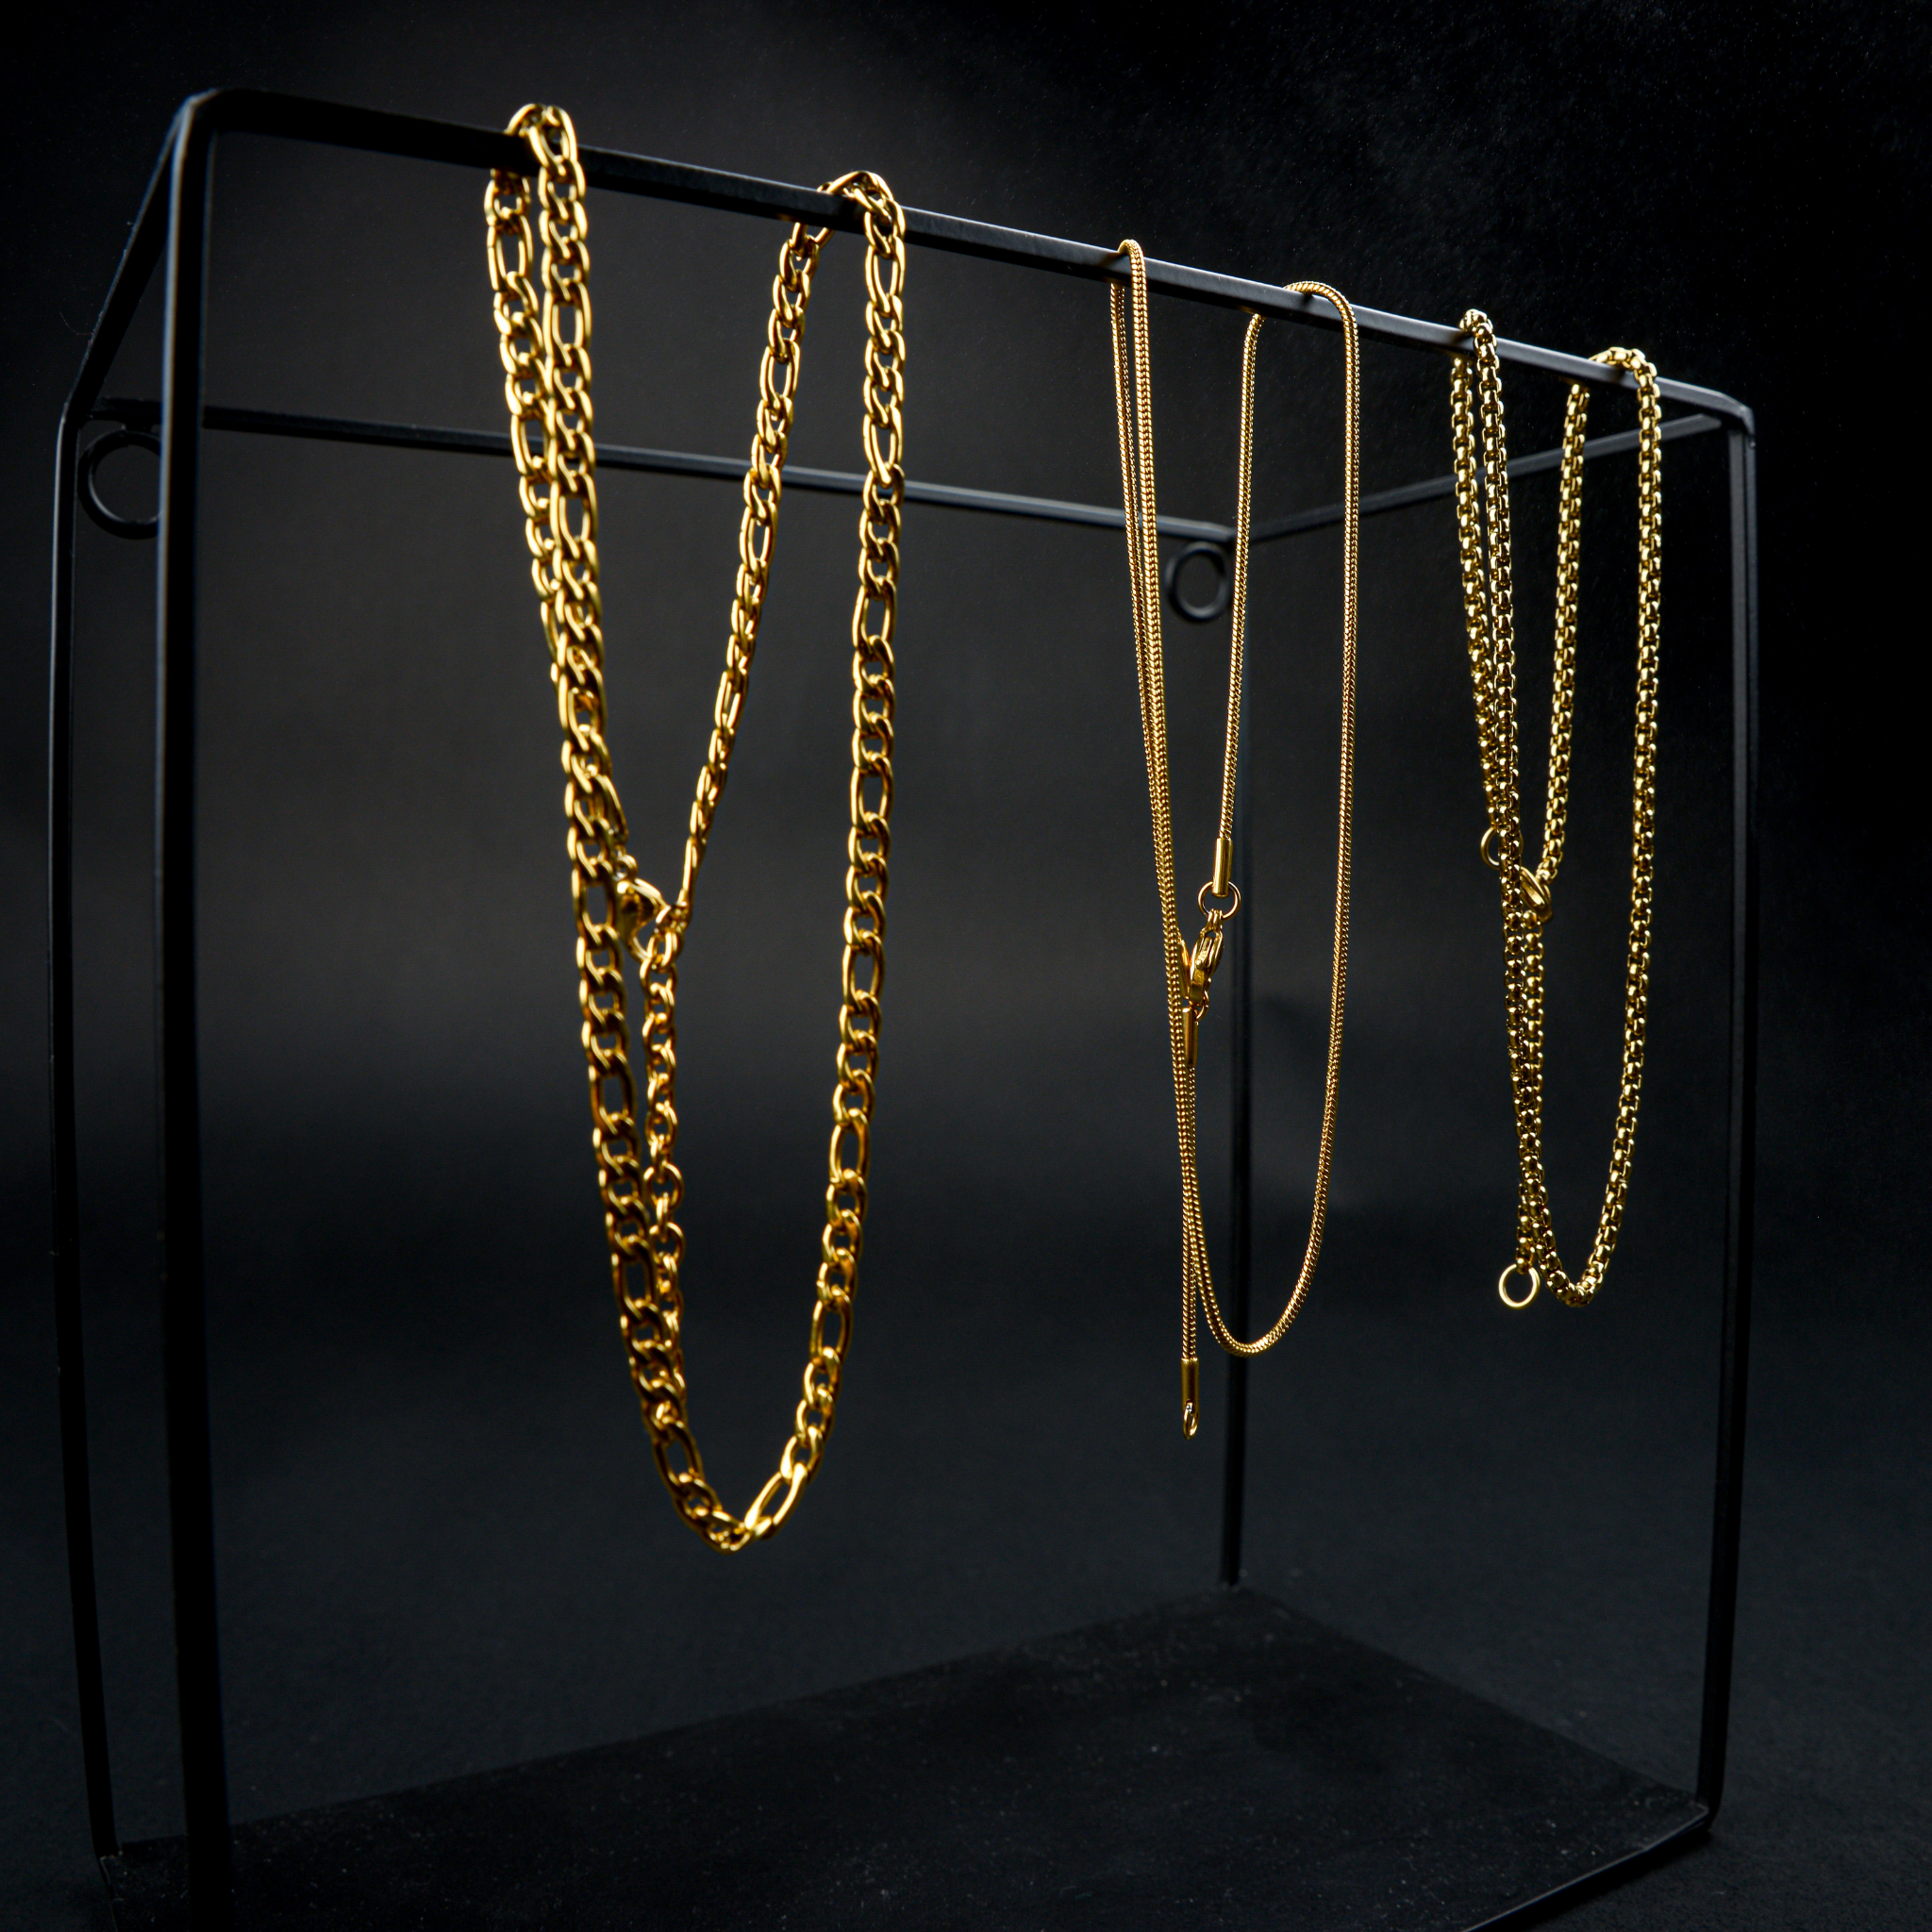 Halsketten aus Edelstahl in Gold von nonu.Berlin hängend